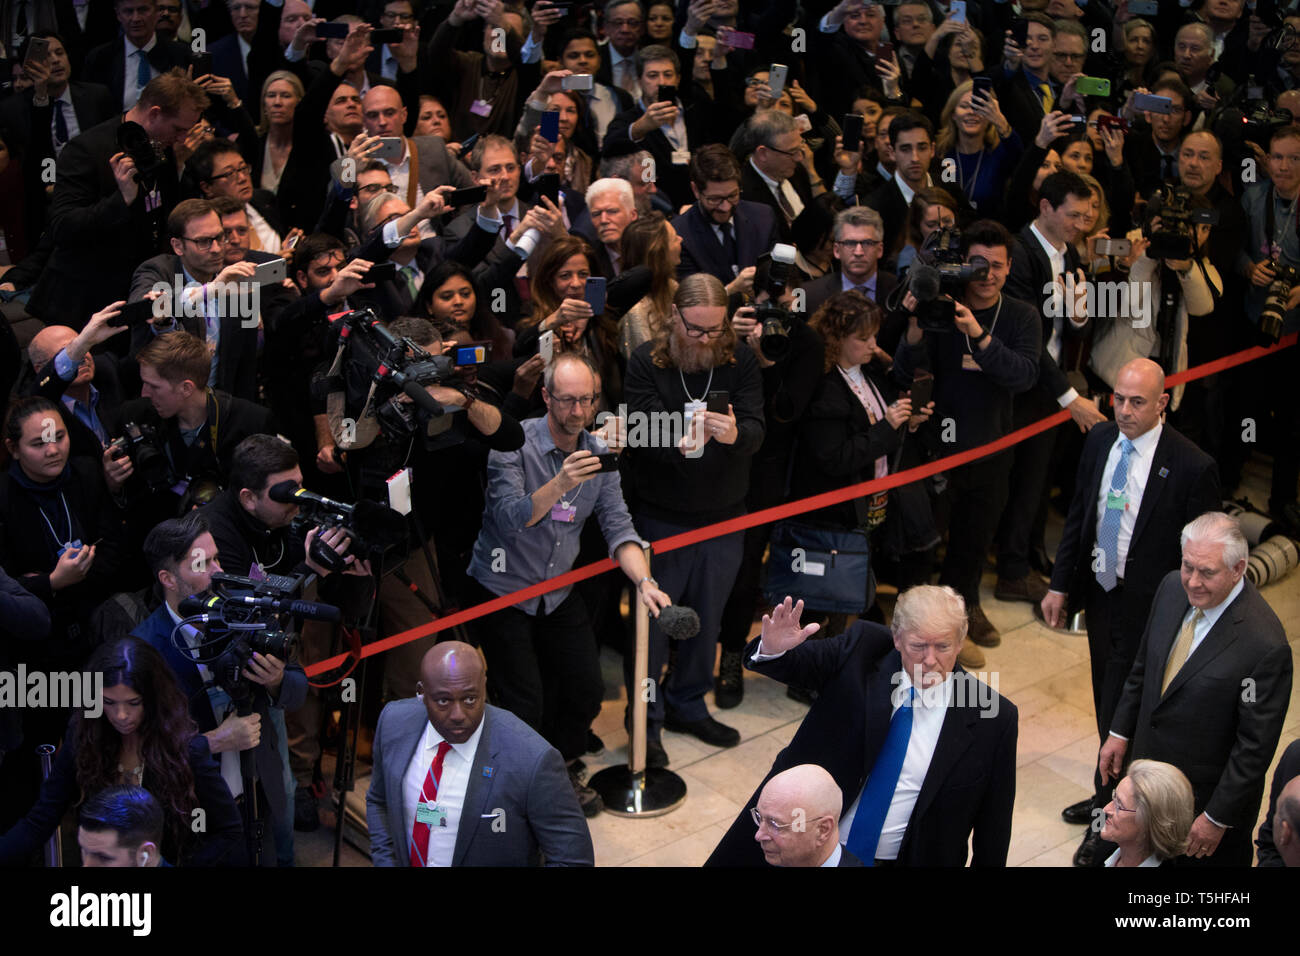 L'intérieur de la foule massive Centre des congrès de Davos, le président américain Donald J. Trump arrive pour le Forum économique mondial. ancien secrétaire d'État Rex Tillerson marche derrière lui. Banque D'Images